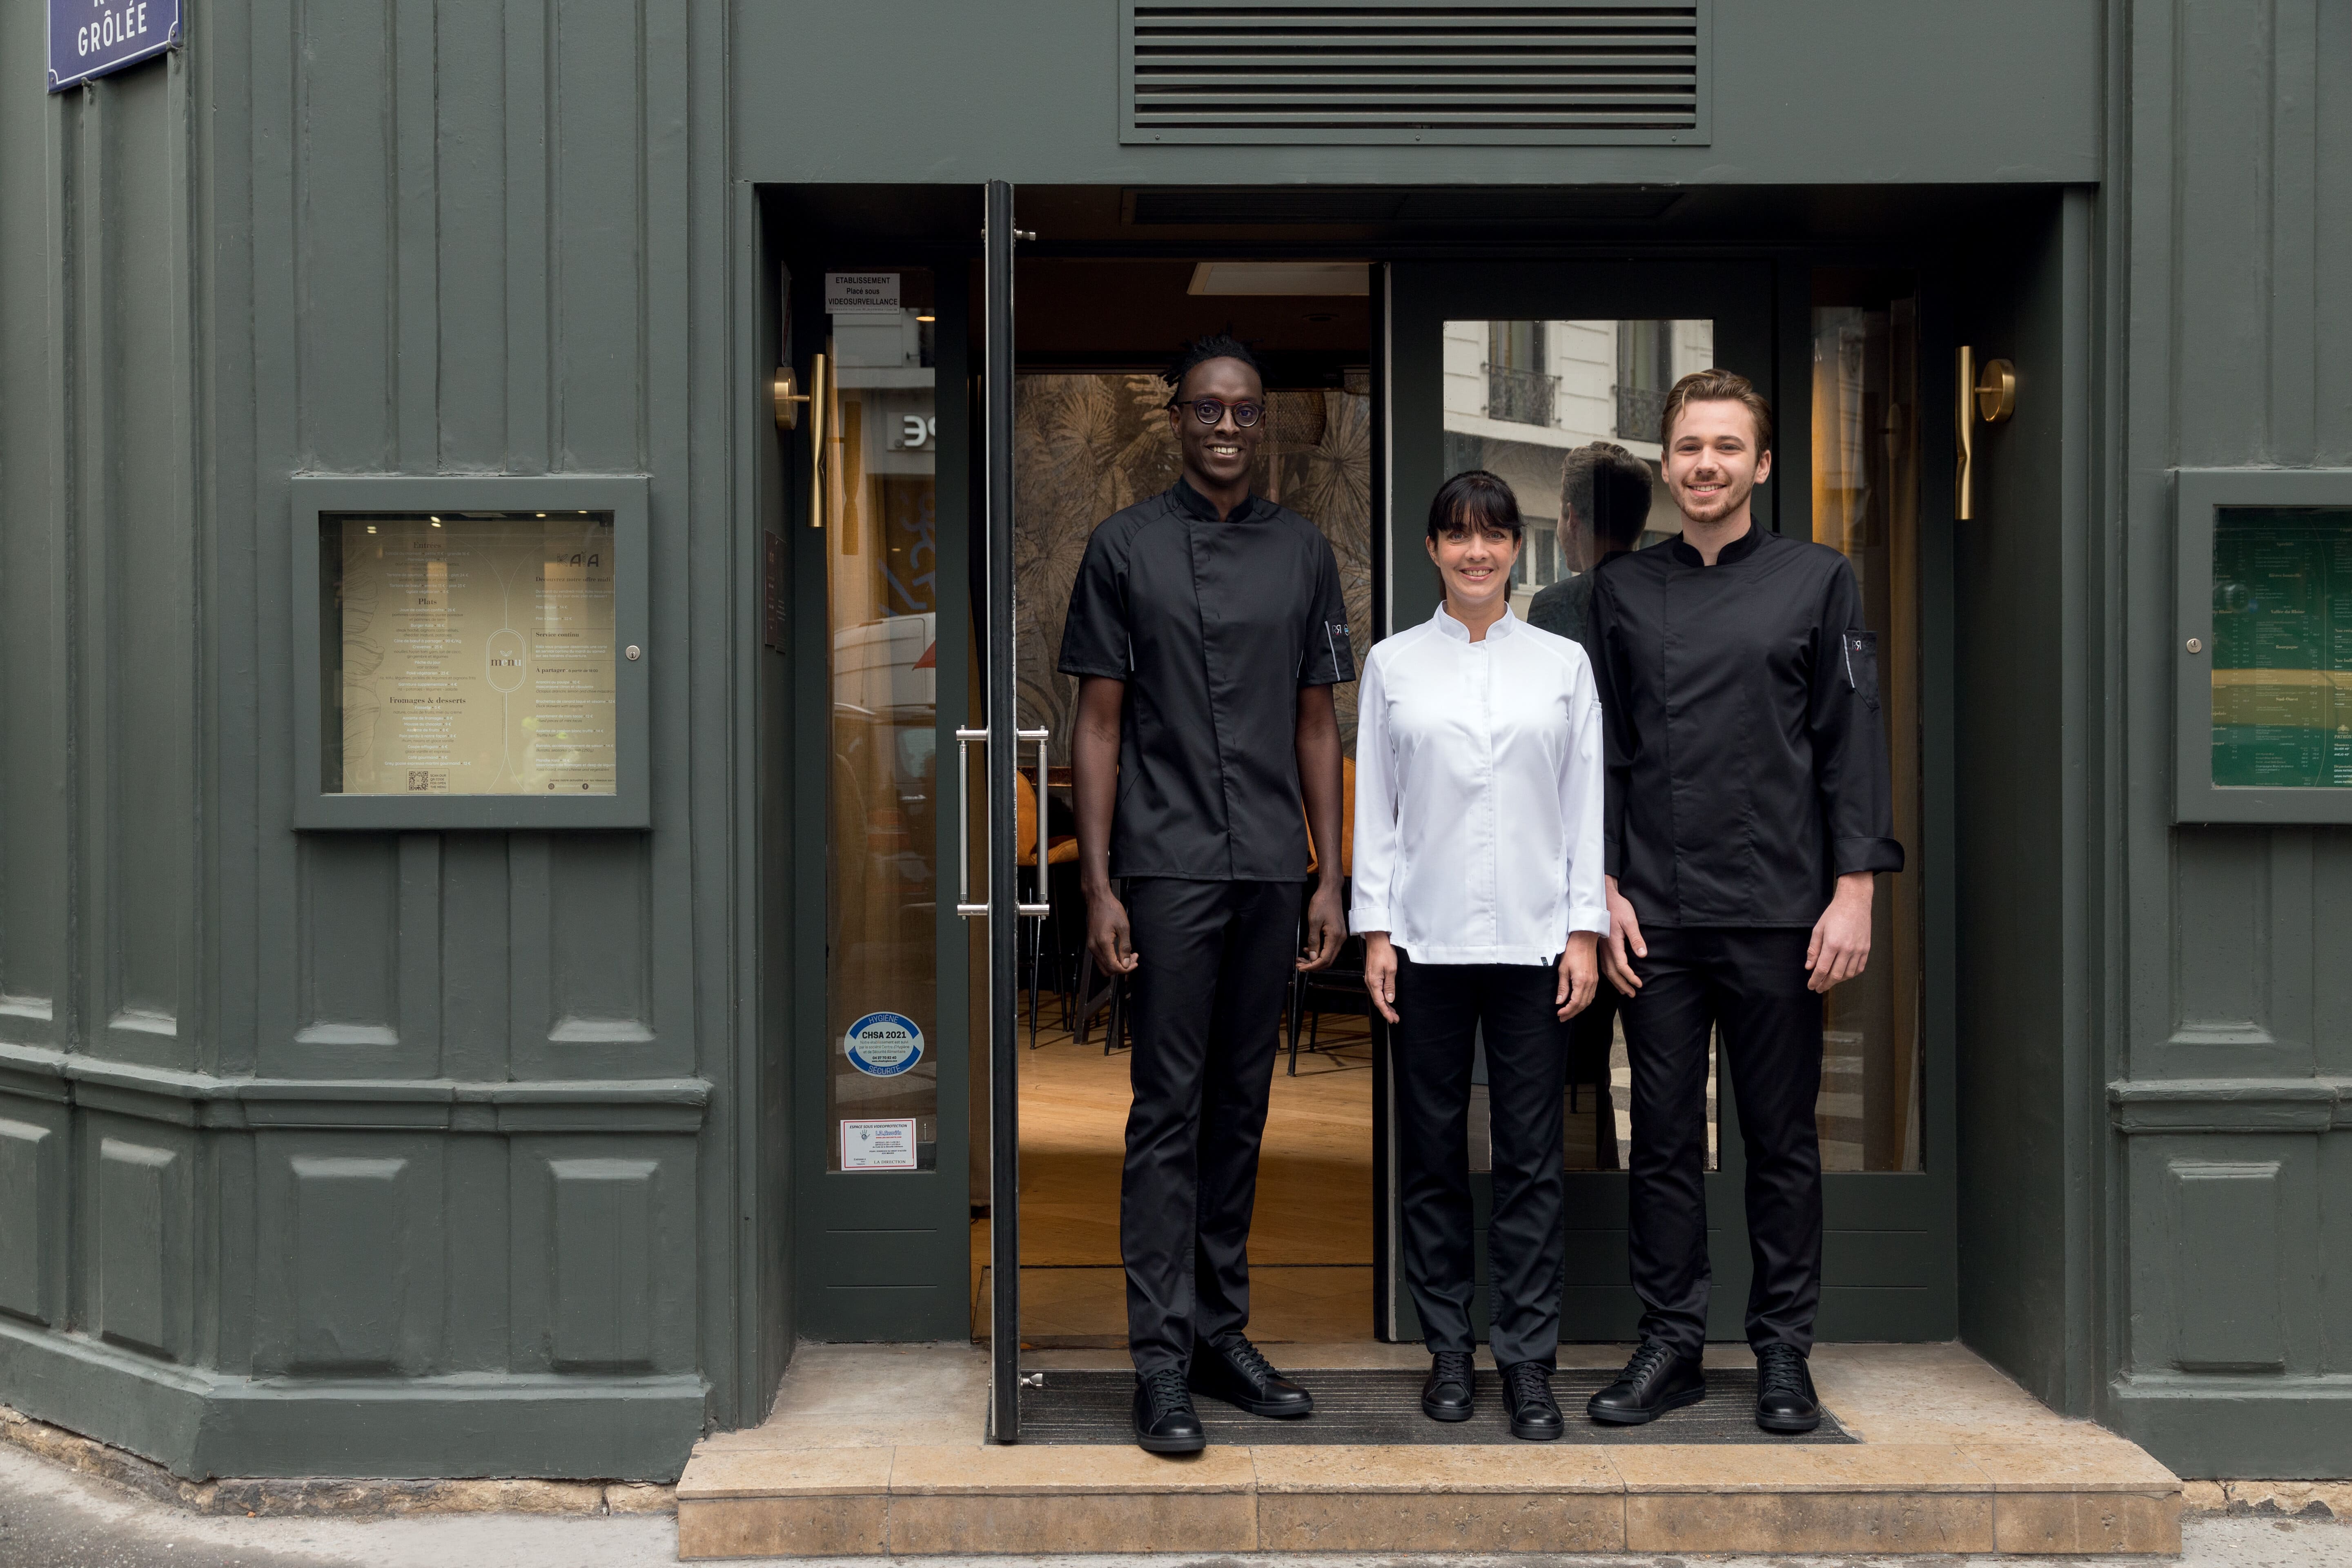 L'équipe d'un restaurant devant la porte de celui-ci : deux hommes et une femme vêtus de vêtements de la marque Robur.